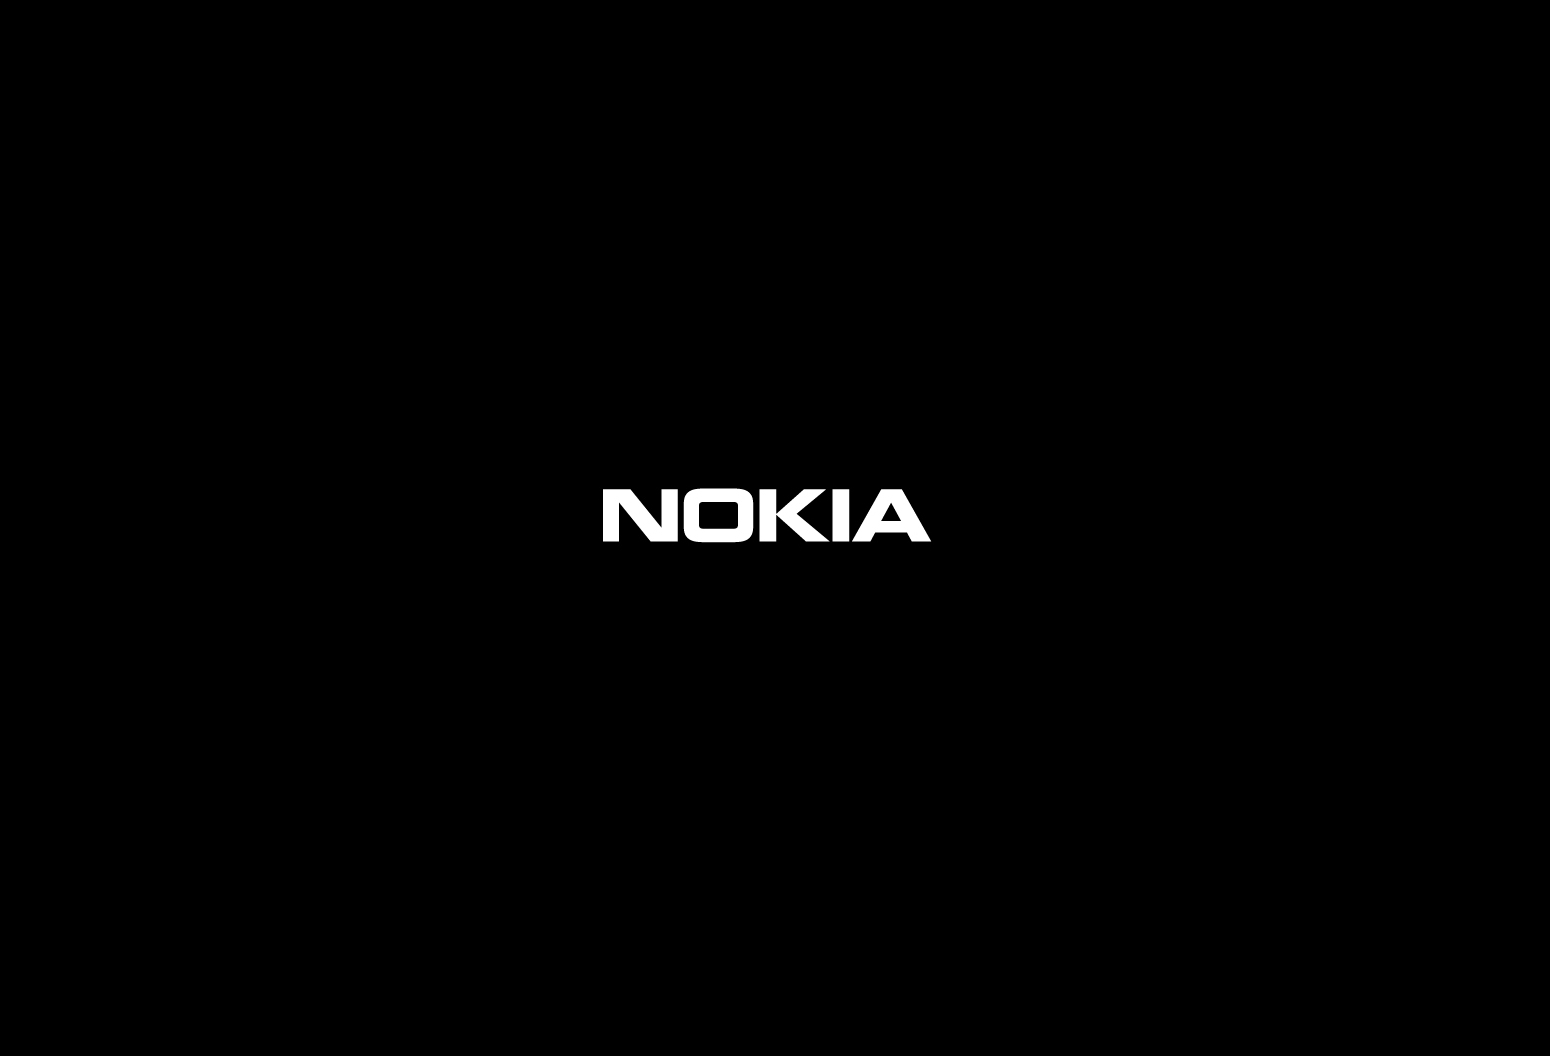 Wallpaper Nokia! Salve a Imagem e Coloque a no seu Desktop ou Notebook ...